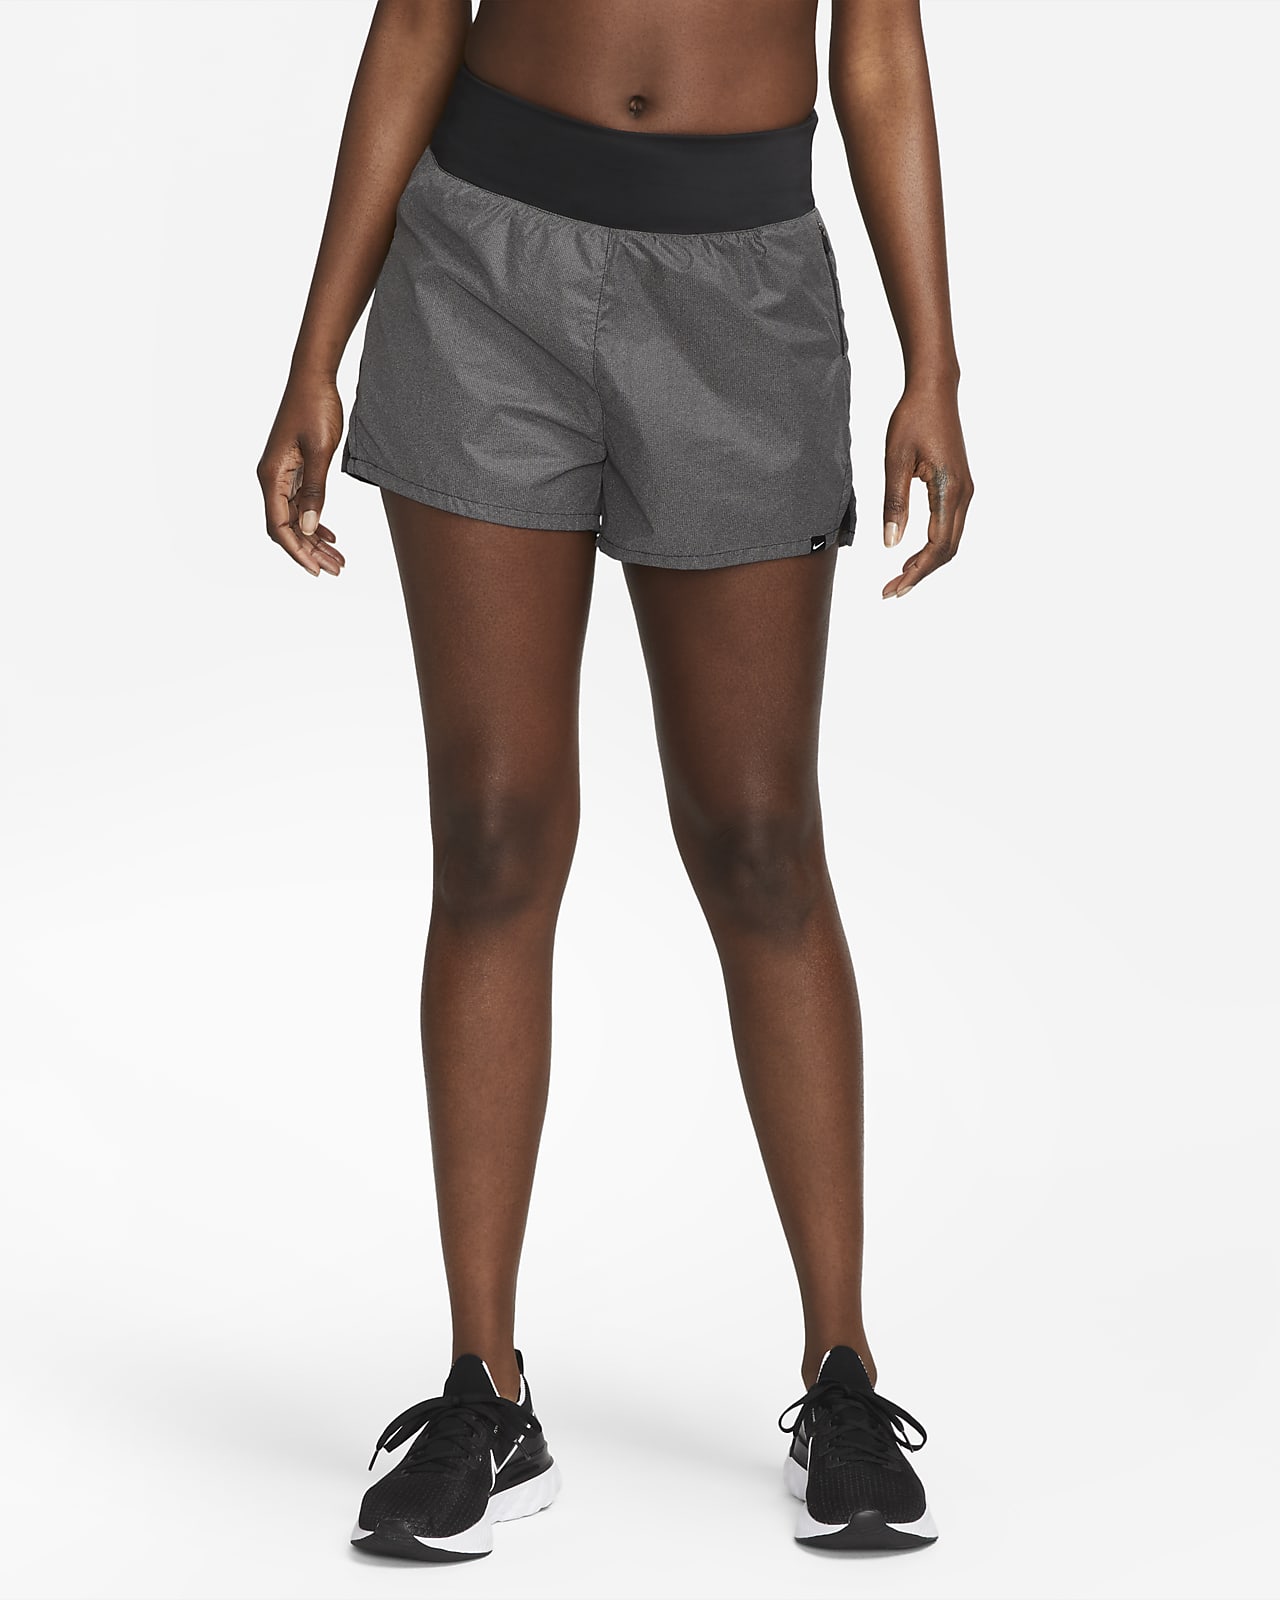 Shorts con diseño reflejante 2 en 1 de tiro medio de 8 cm para mujer Nike Run Division